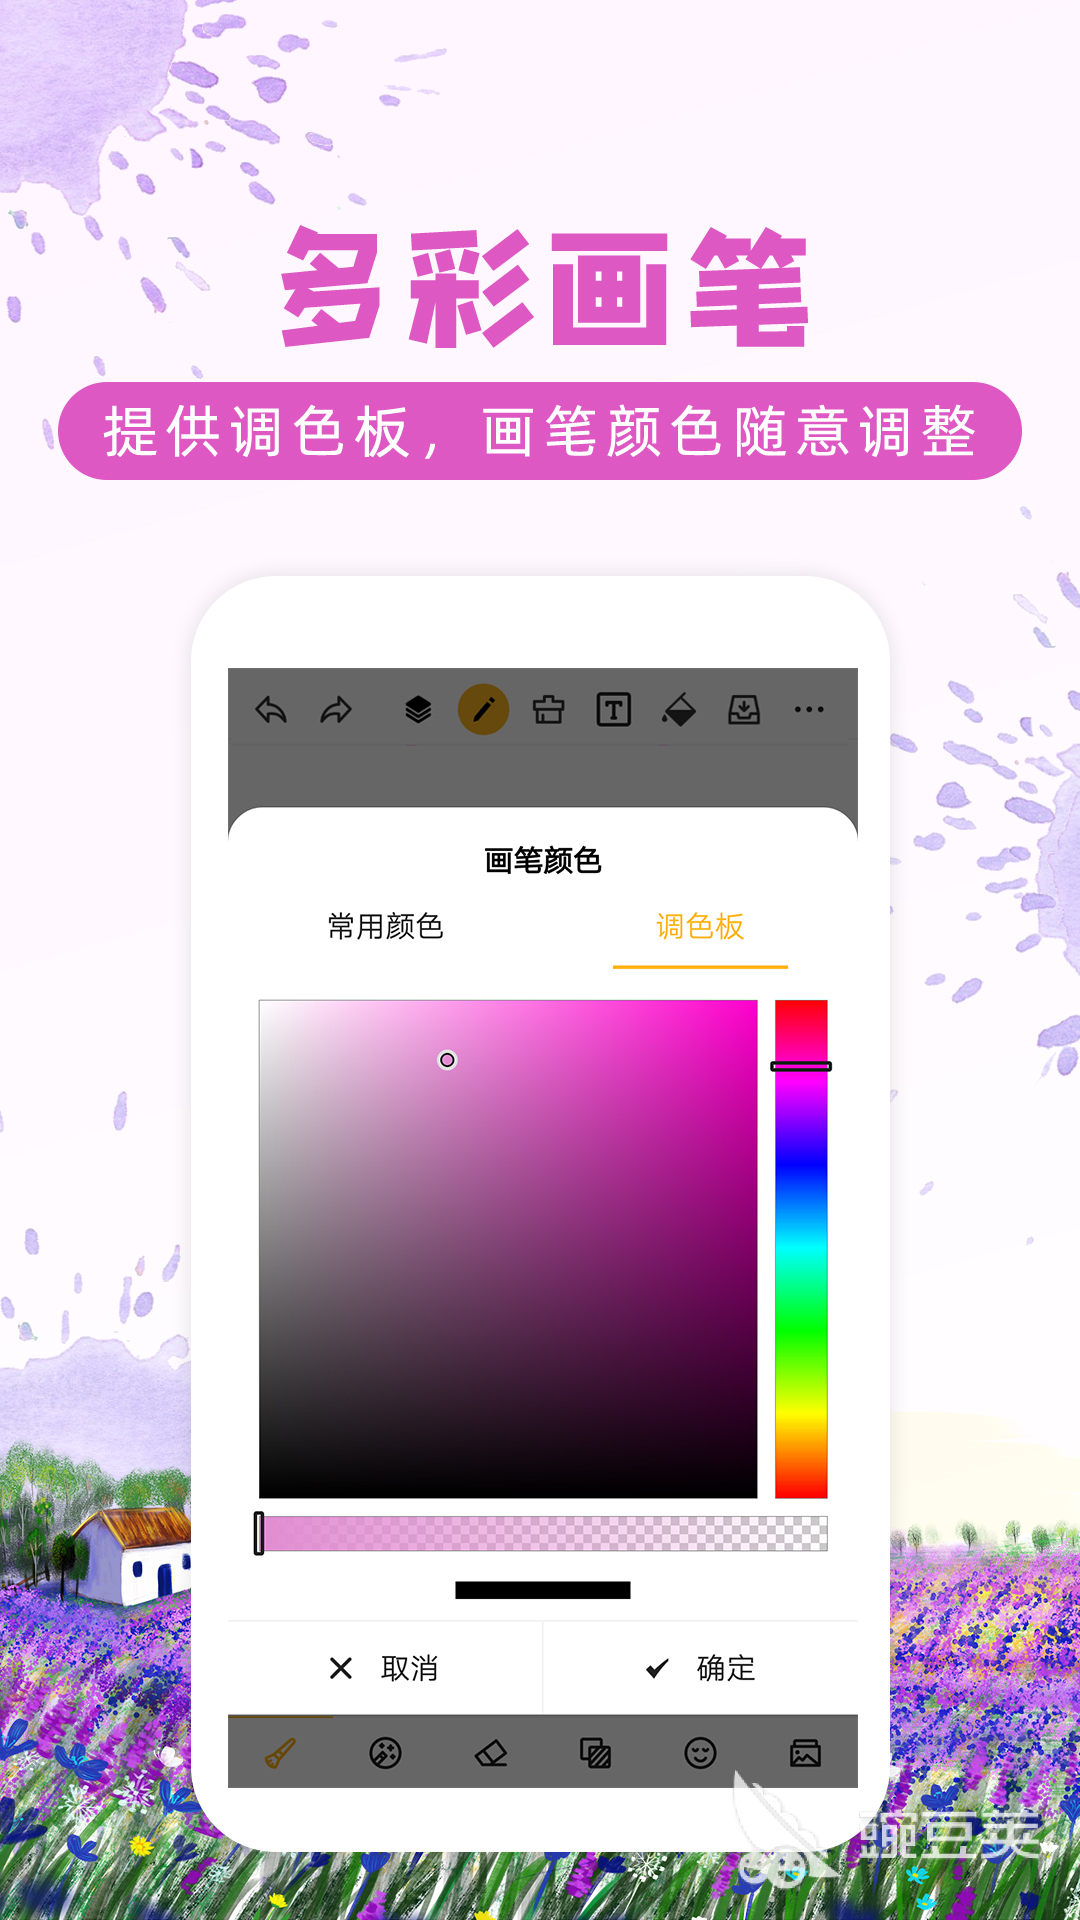 功能超多的画画涂鸦app下载 好用的画画涂鸦软件推荐